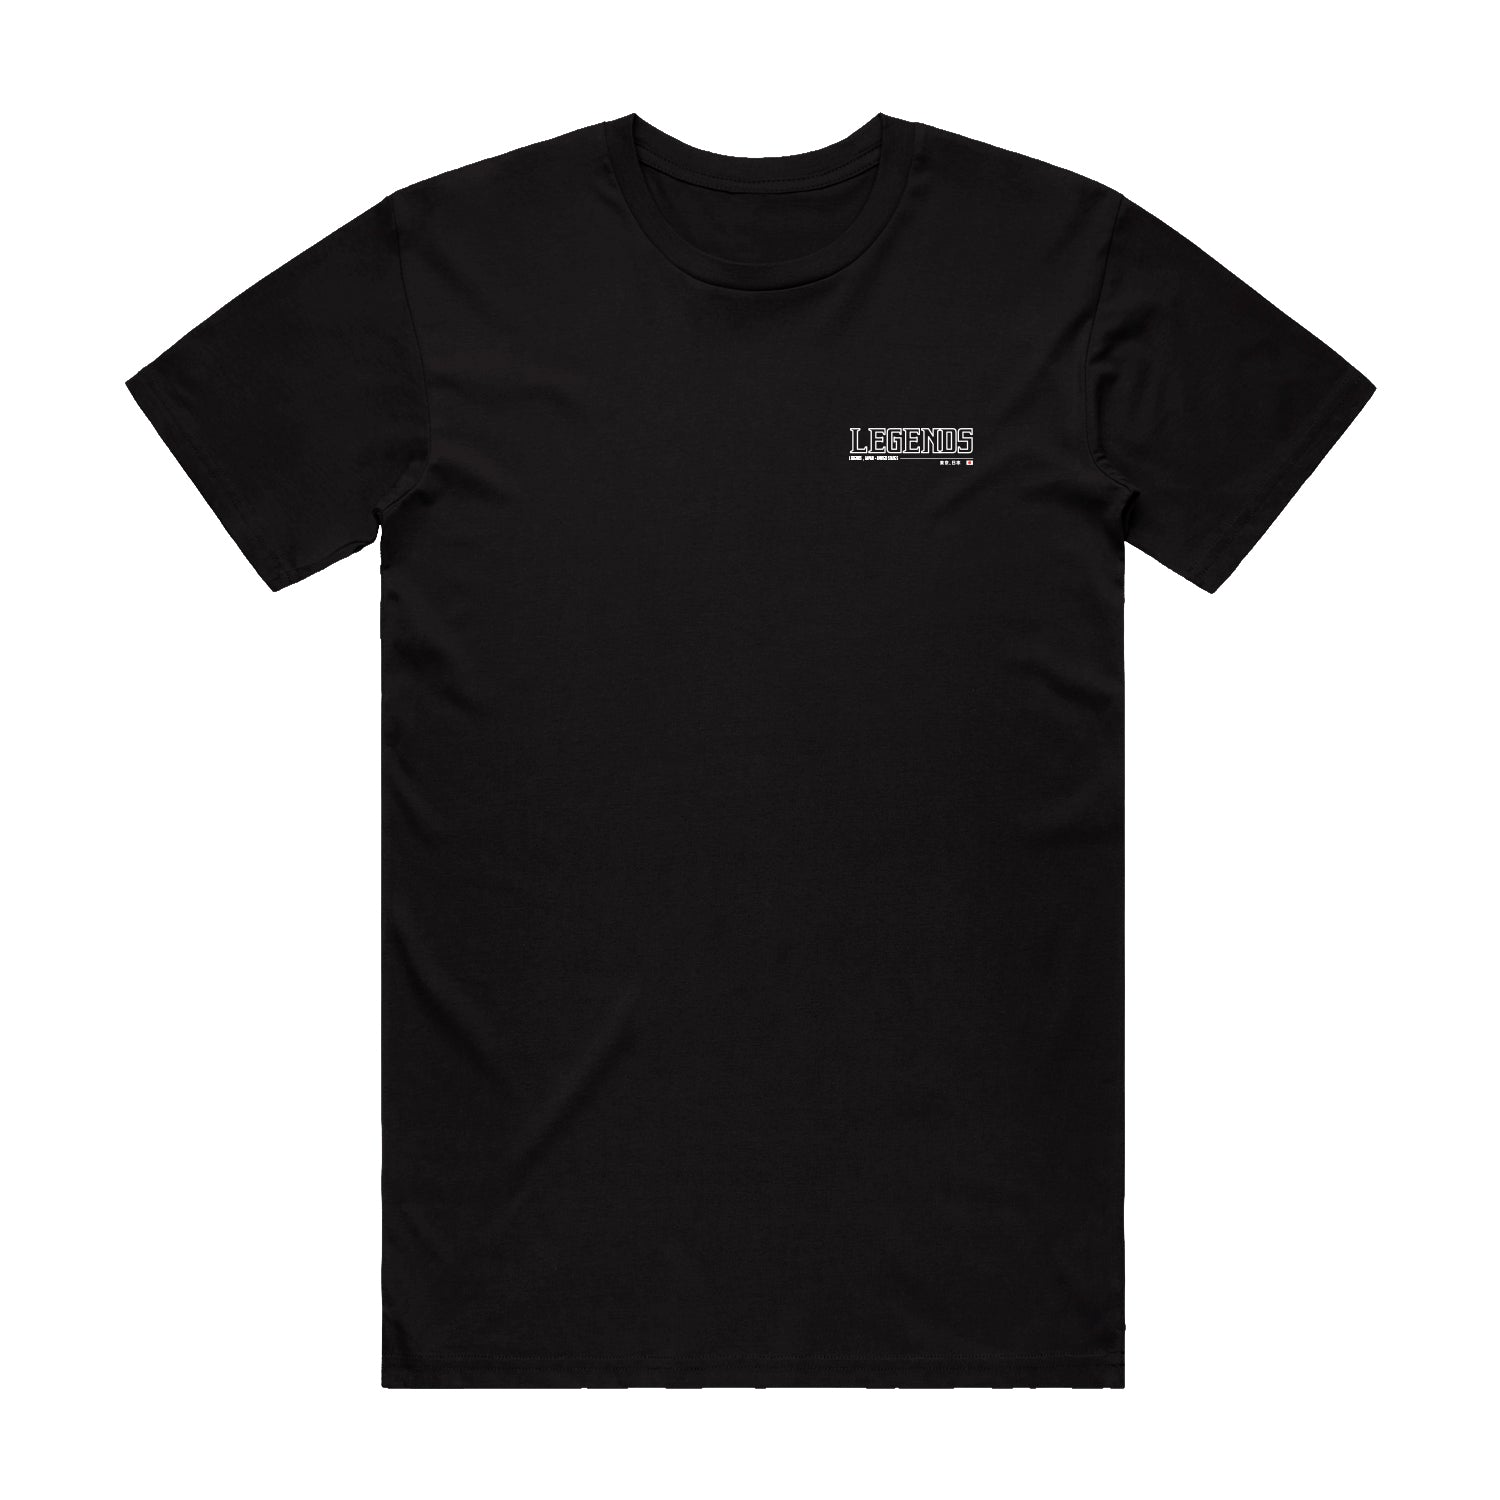 Tshirt - Black Tokyo Drift Evo